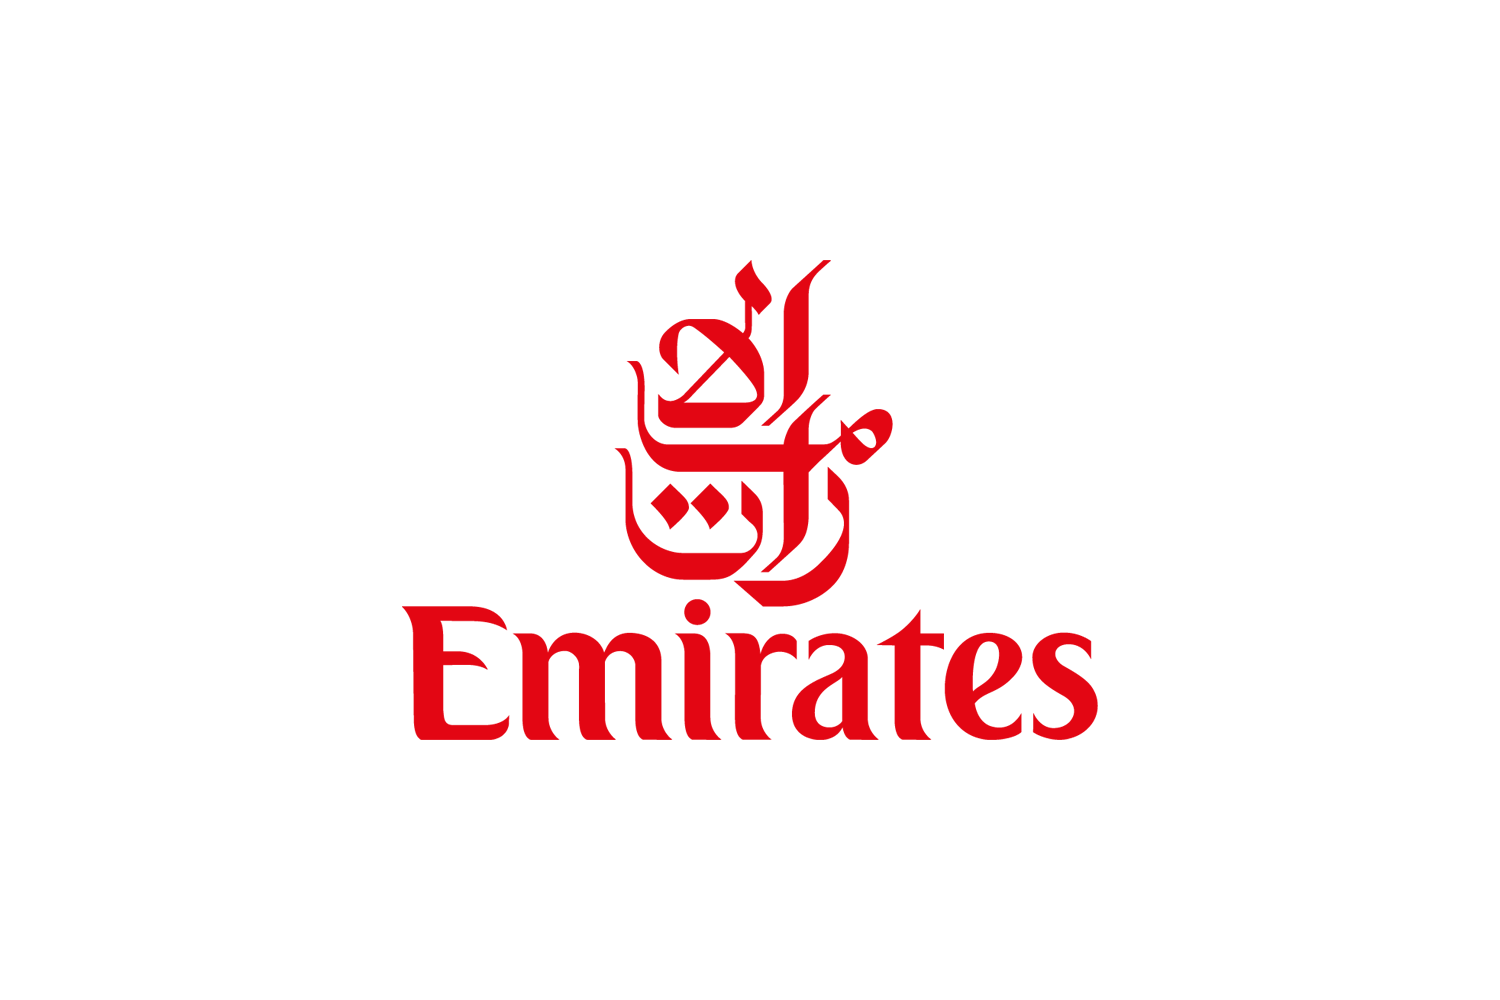 Fly Emirates Logo, The Emirat